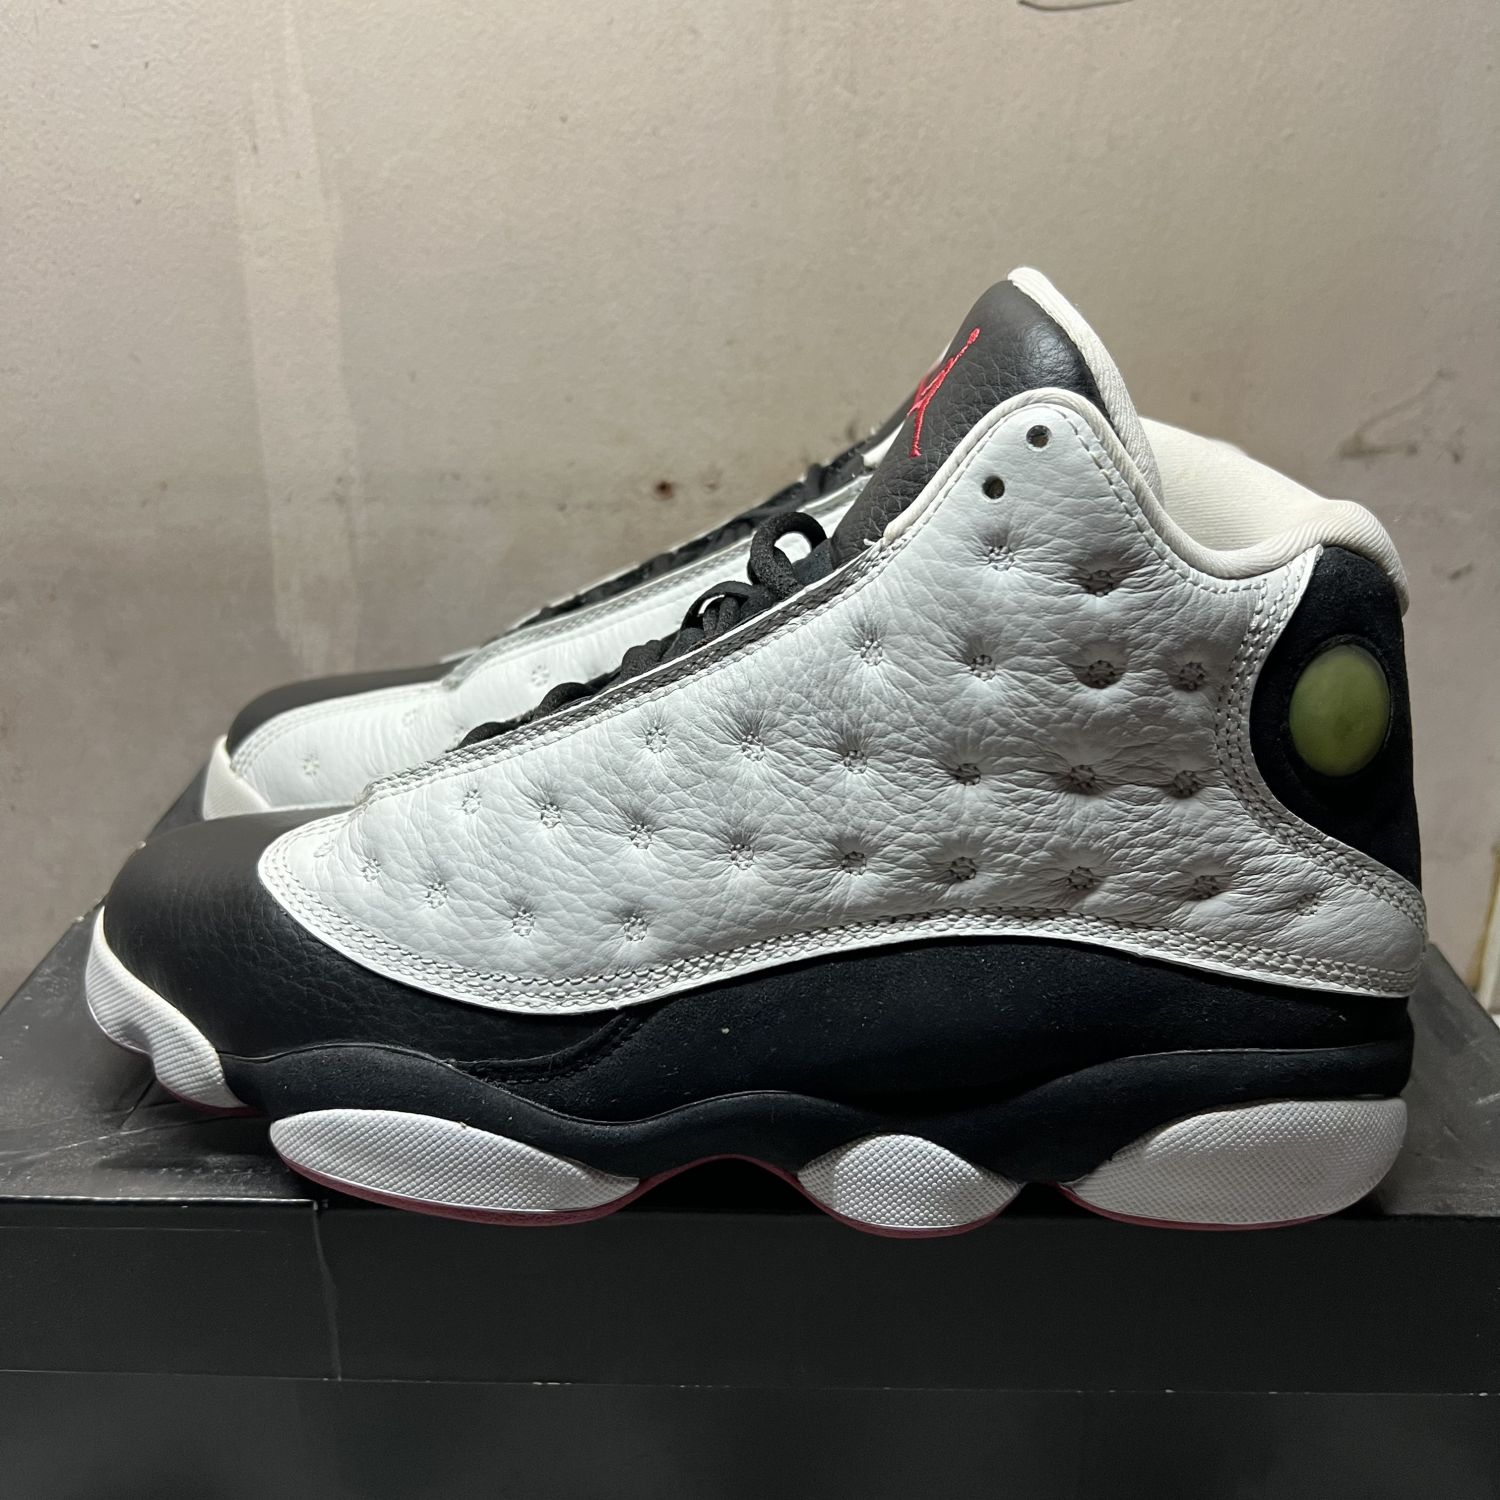 Nike Air Jordan 13 Retro OG He Got Game/Black/White 309259-104 Men's Size  12